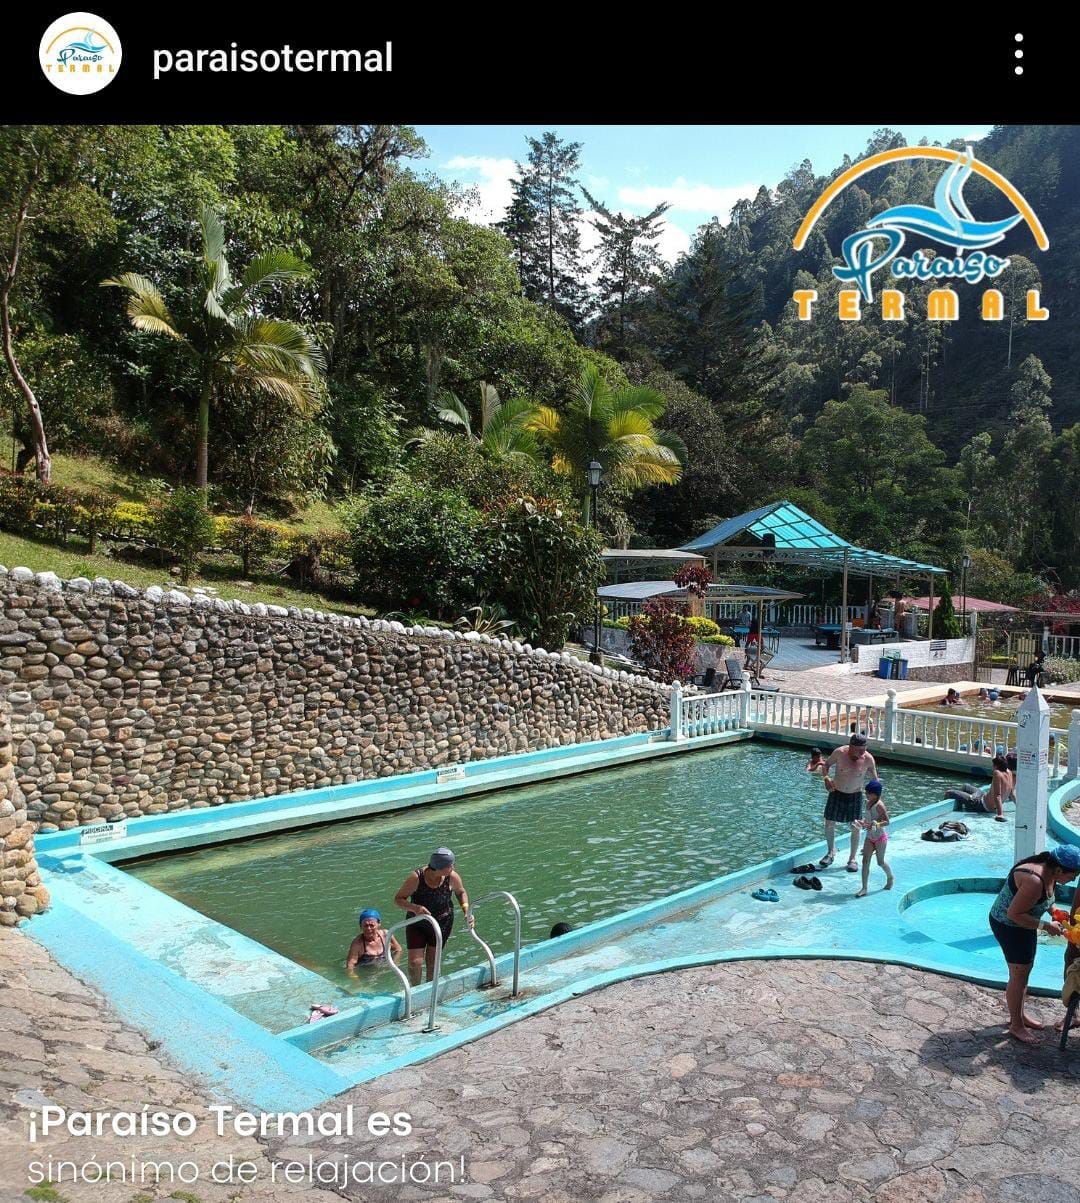 Paraíso Termal ofrece los servicios de piscinas naturales para sus visitantes.